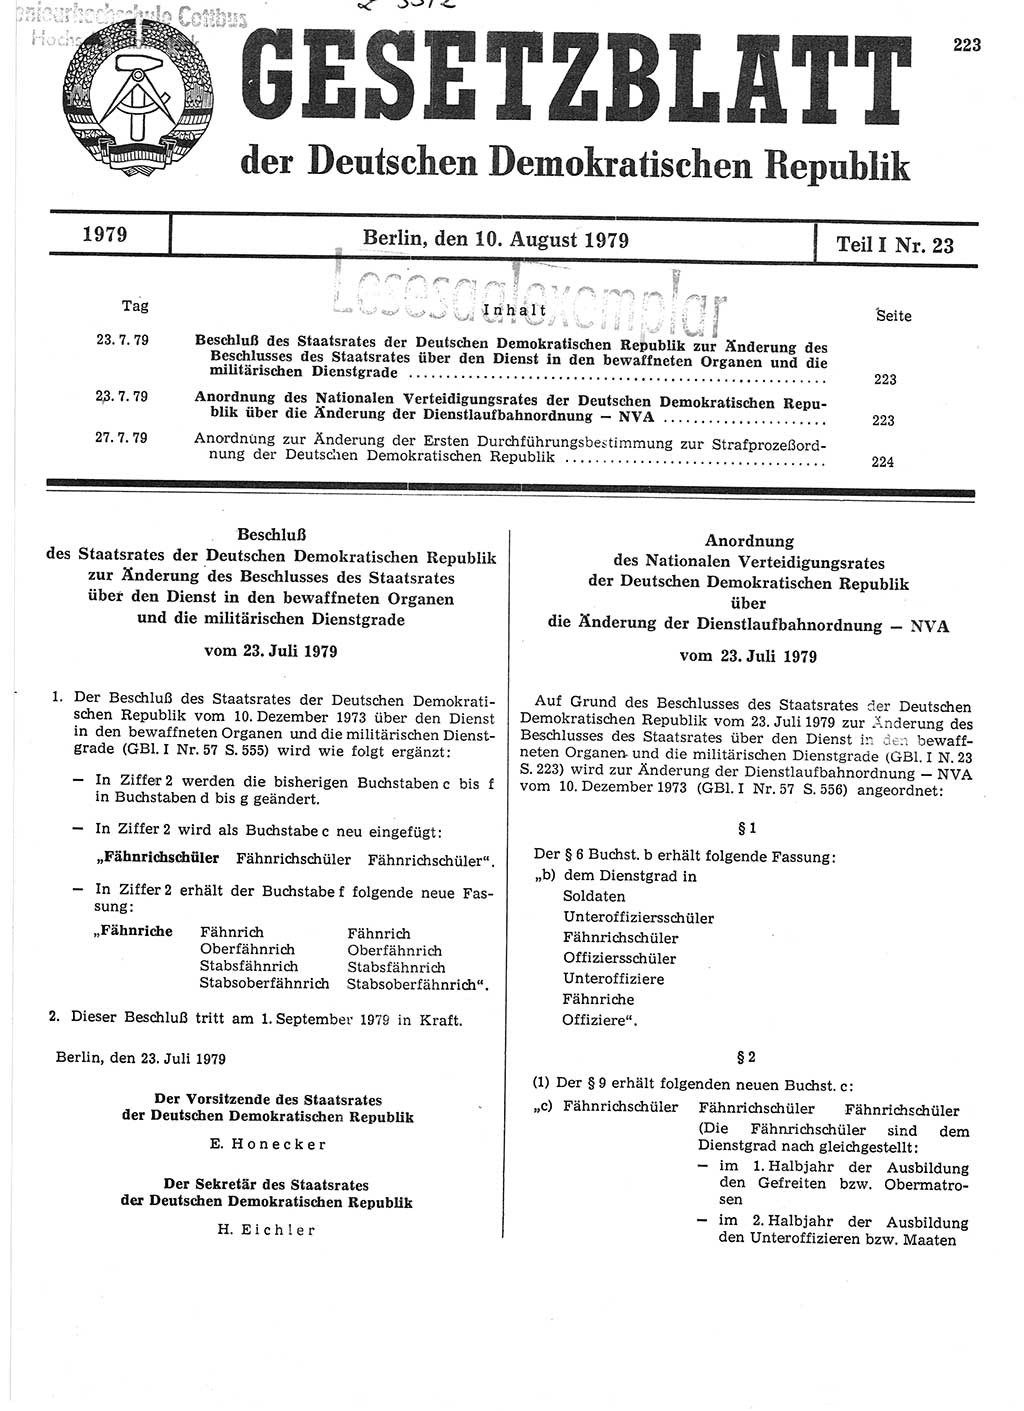 Gesetzblatt (GBl.) der Deutschen Demokratischen Republik (DDR) Teil Ⅰ 1979, Seite 223 (GBl. DDR Ⅰ 1979, S. 223)